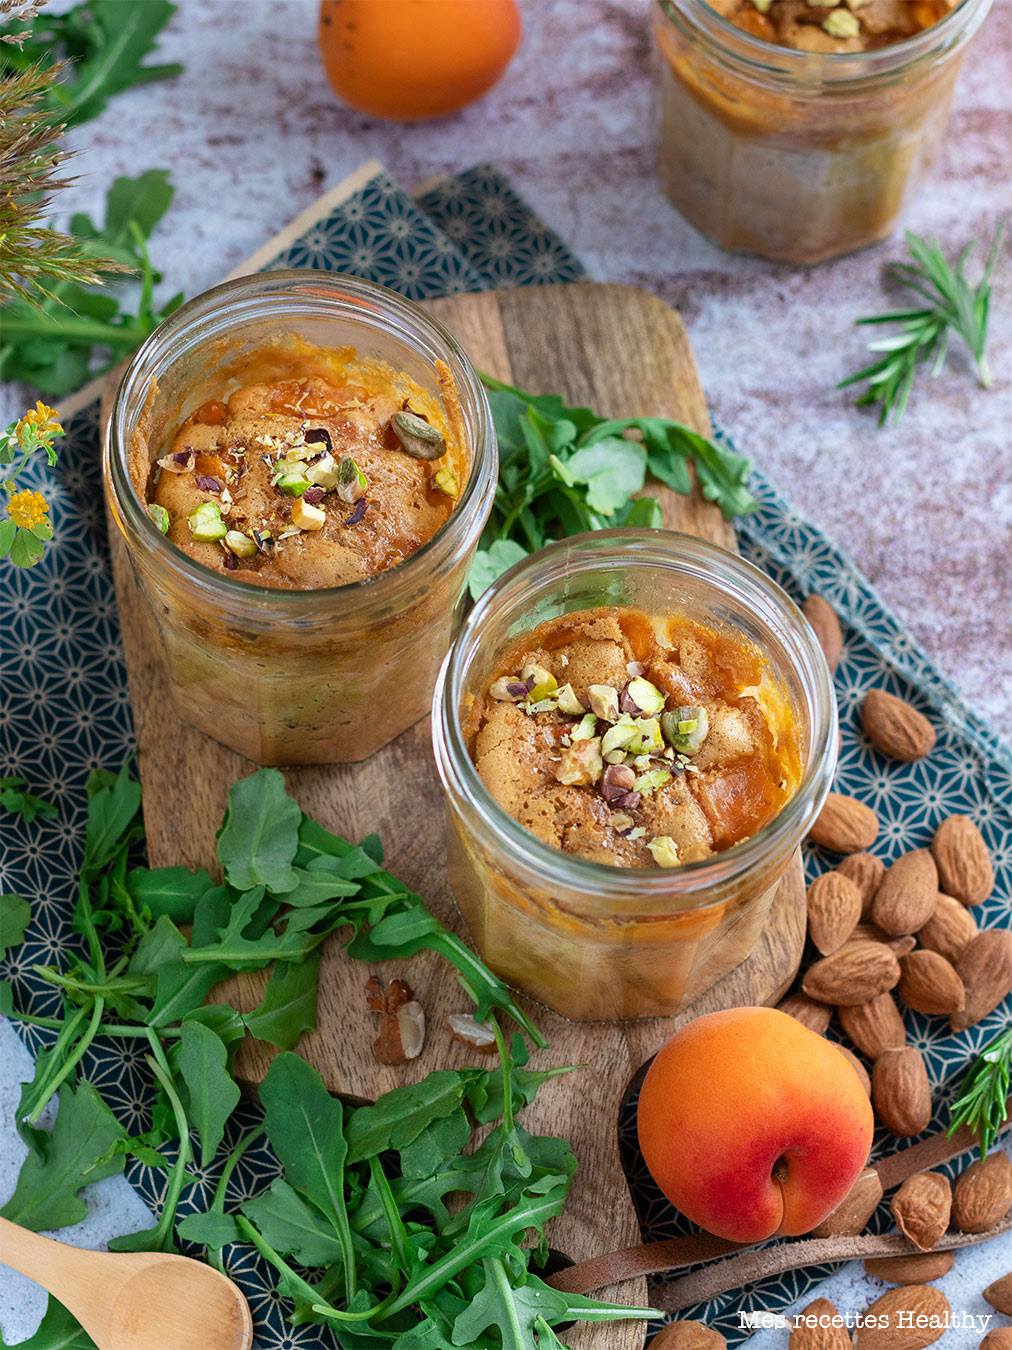 recette healthy-clafoutis aux abricots-fruit-lait d'avoine-fruits